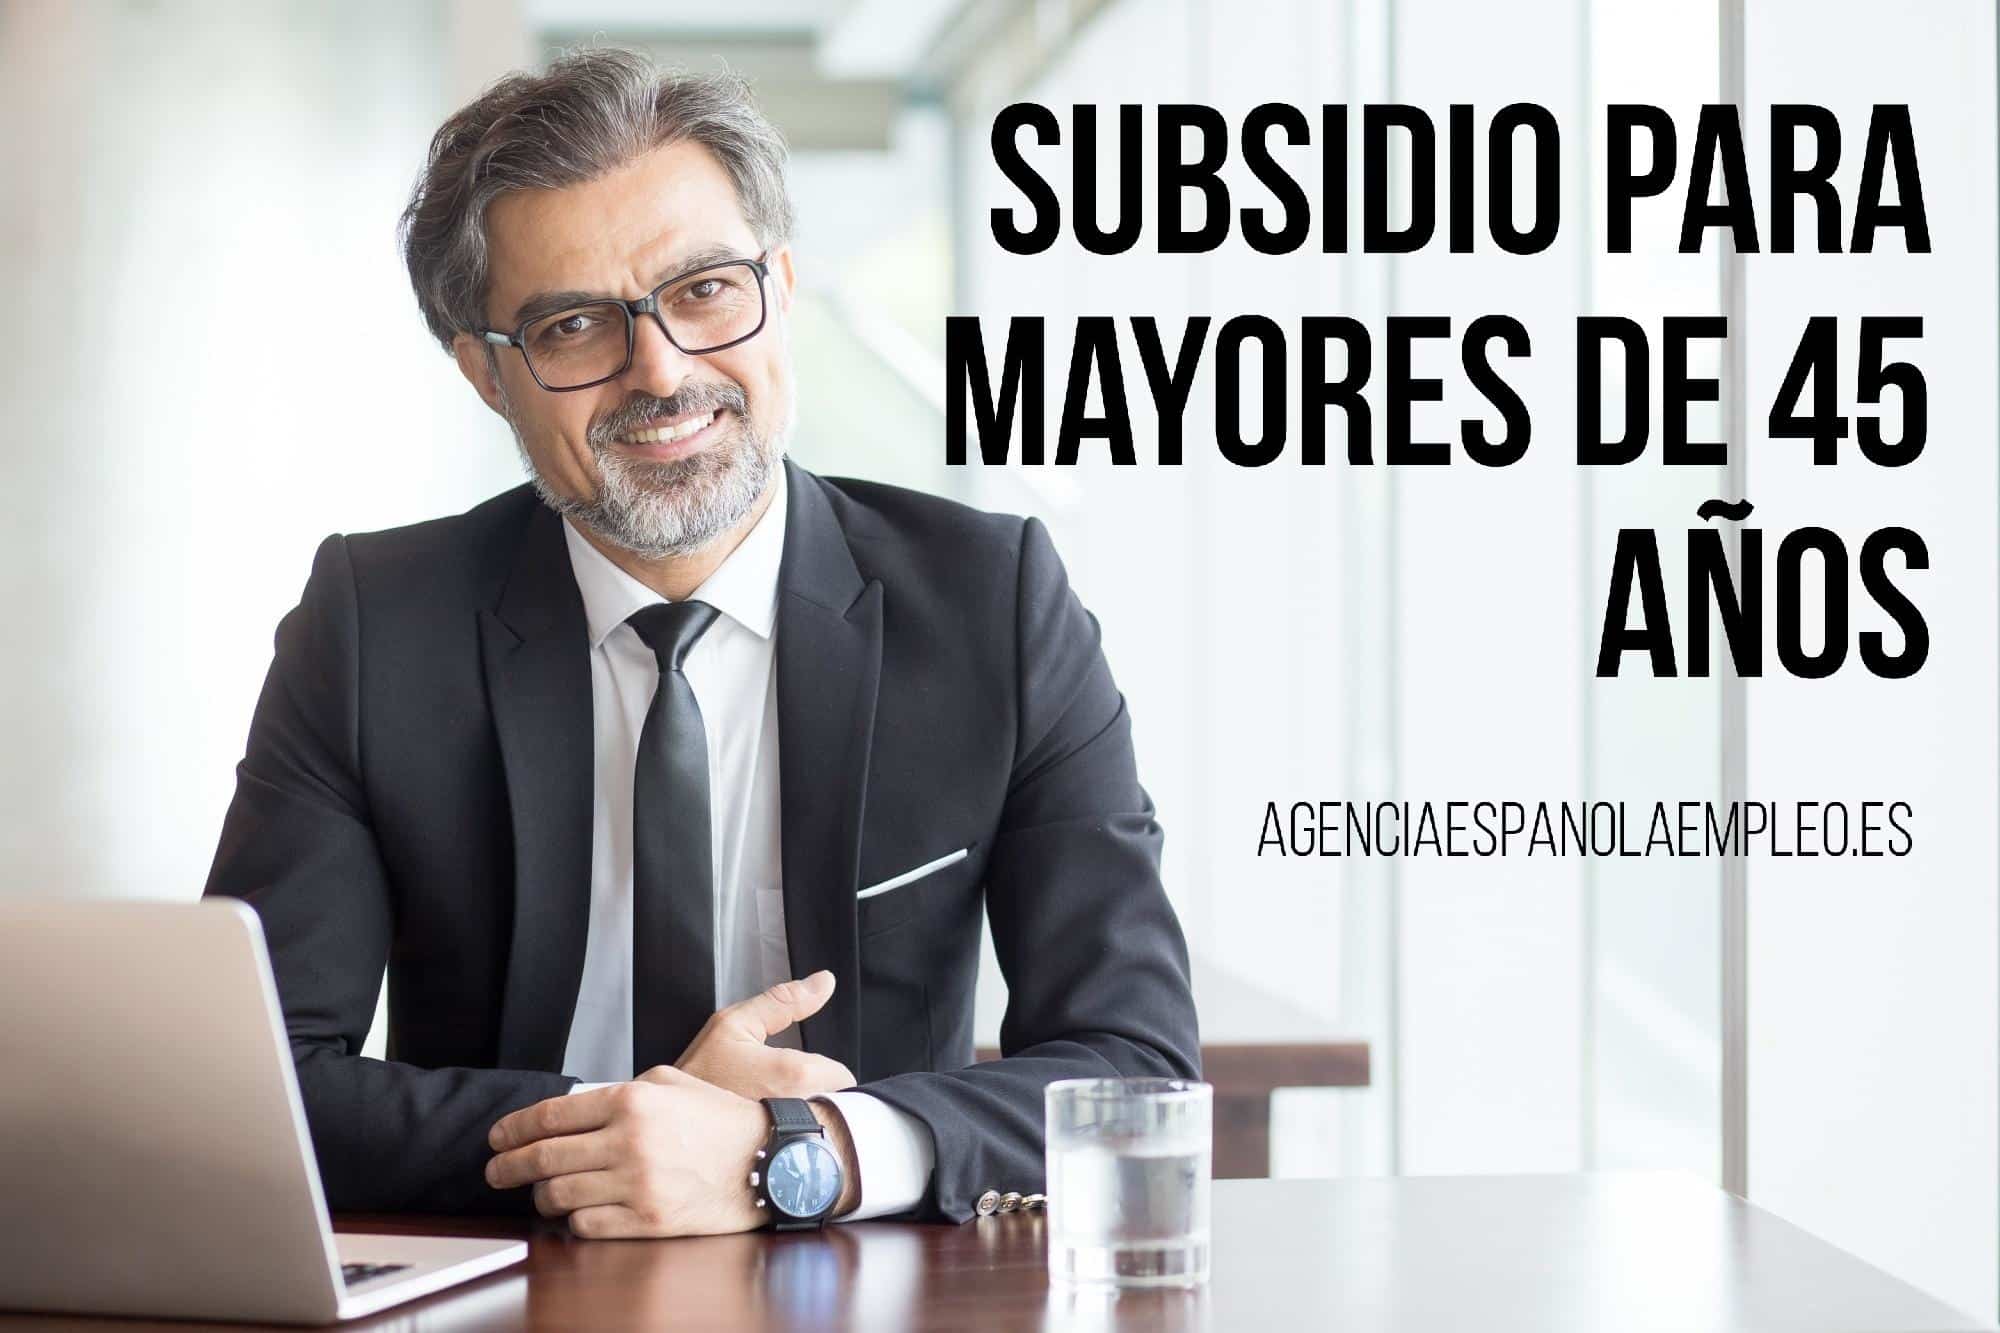 Descubre todos los requisitos y características del subsidio para mayores de 45 años ofrecido por la Agencia Española de Empleo.